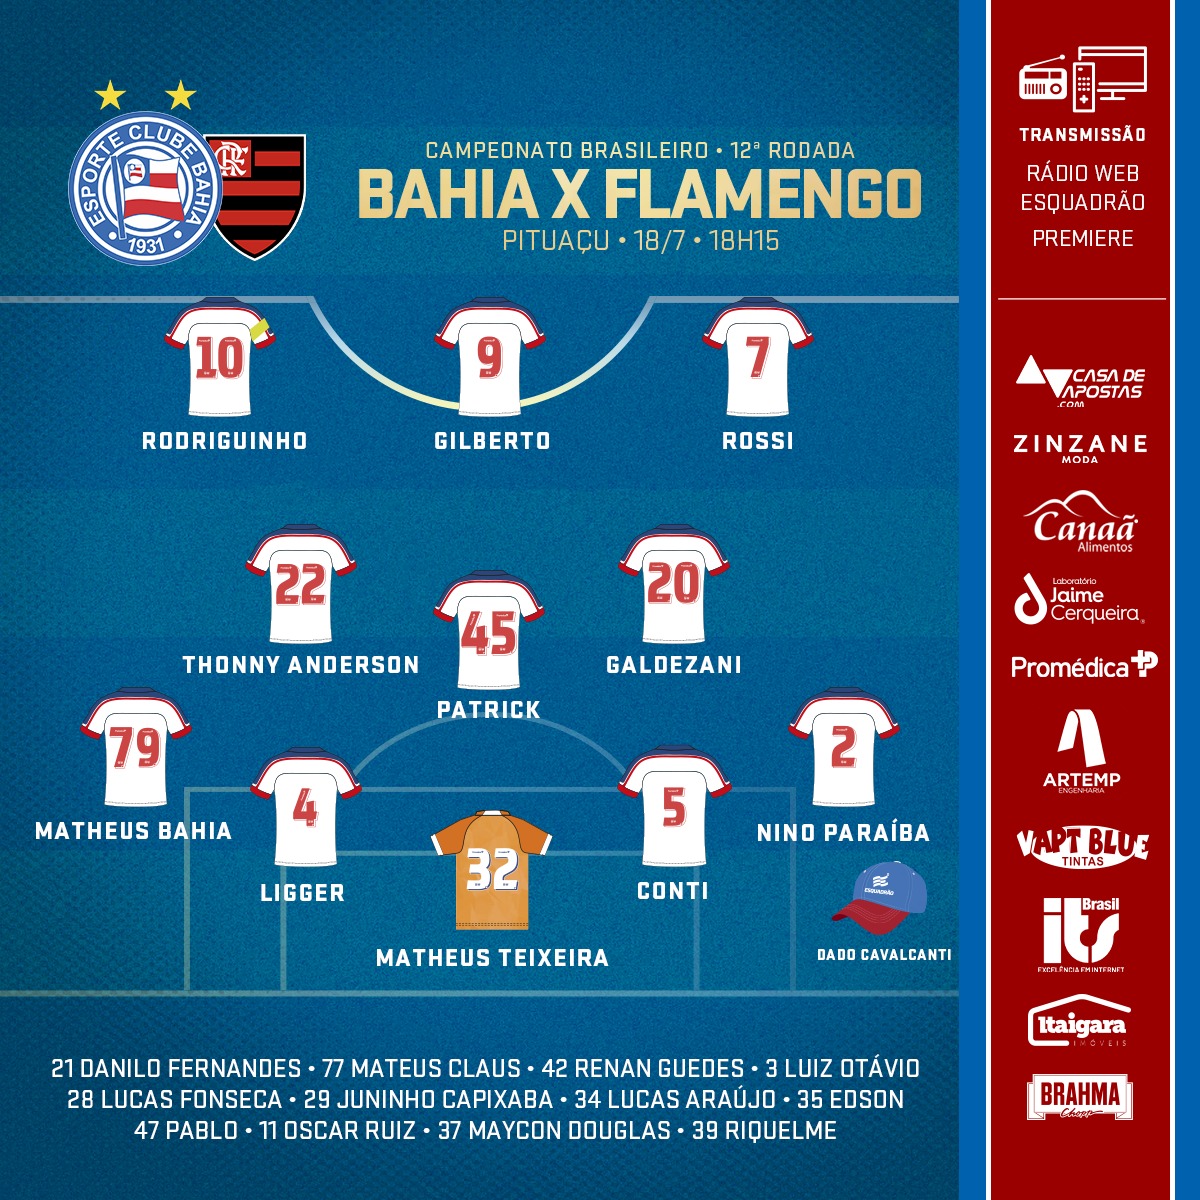 Bahia escalado para pegar o Flamengo pela Série A